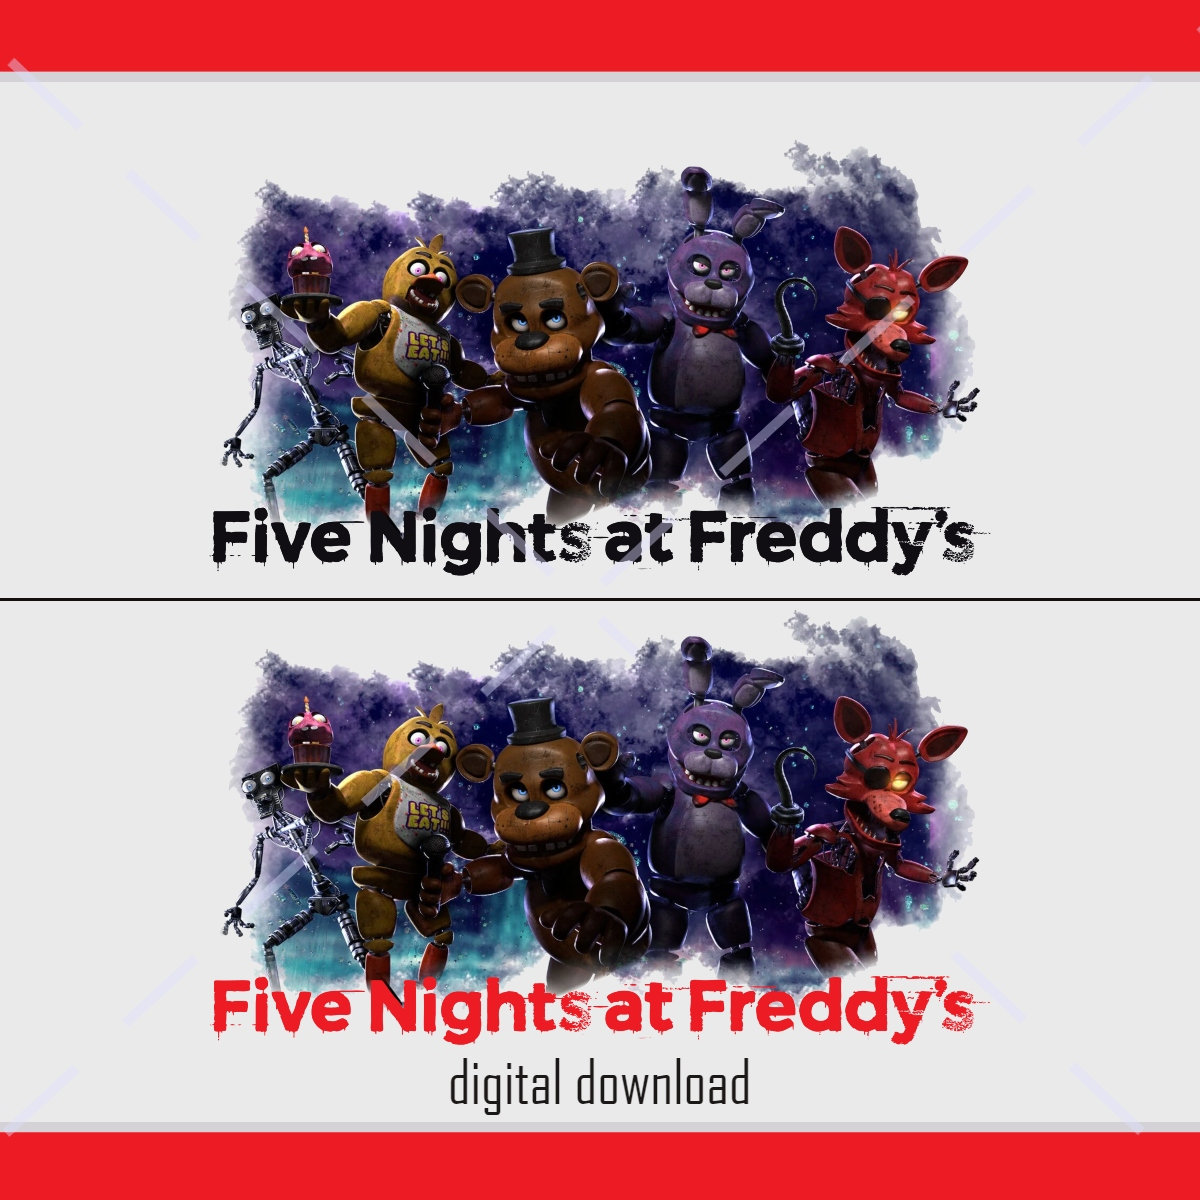 Novo jogo da popular série Five Nights at Freddy's anunciado para